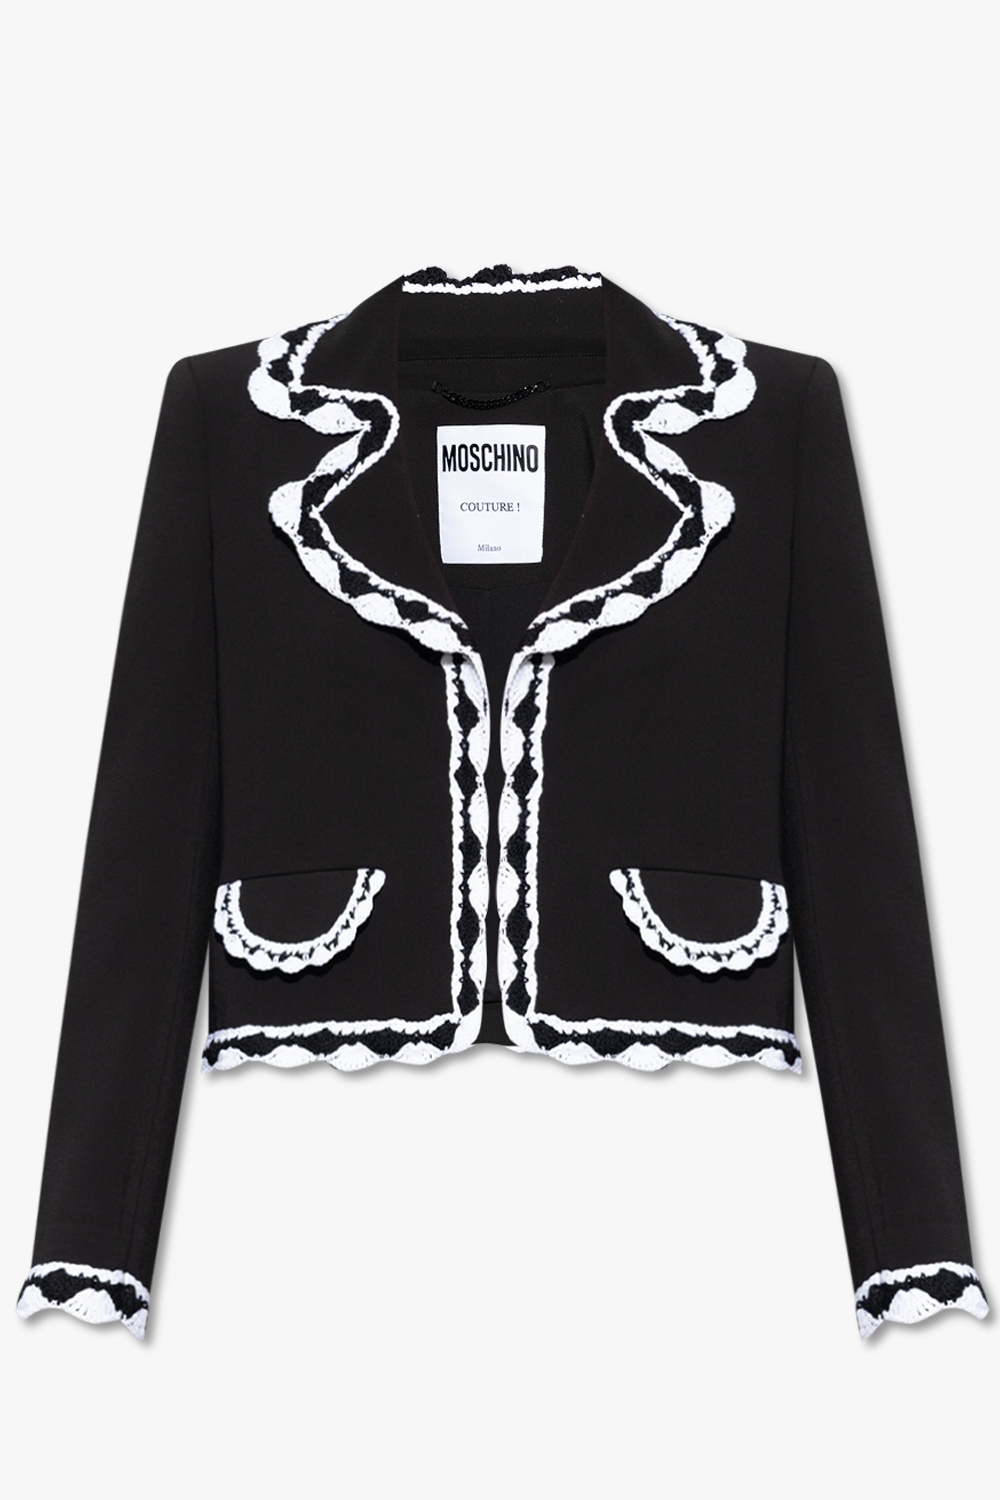 Moschino Crocheted blazer